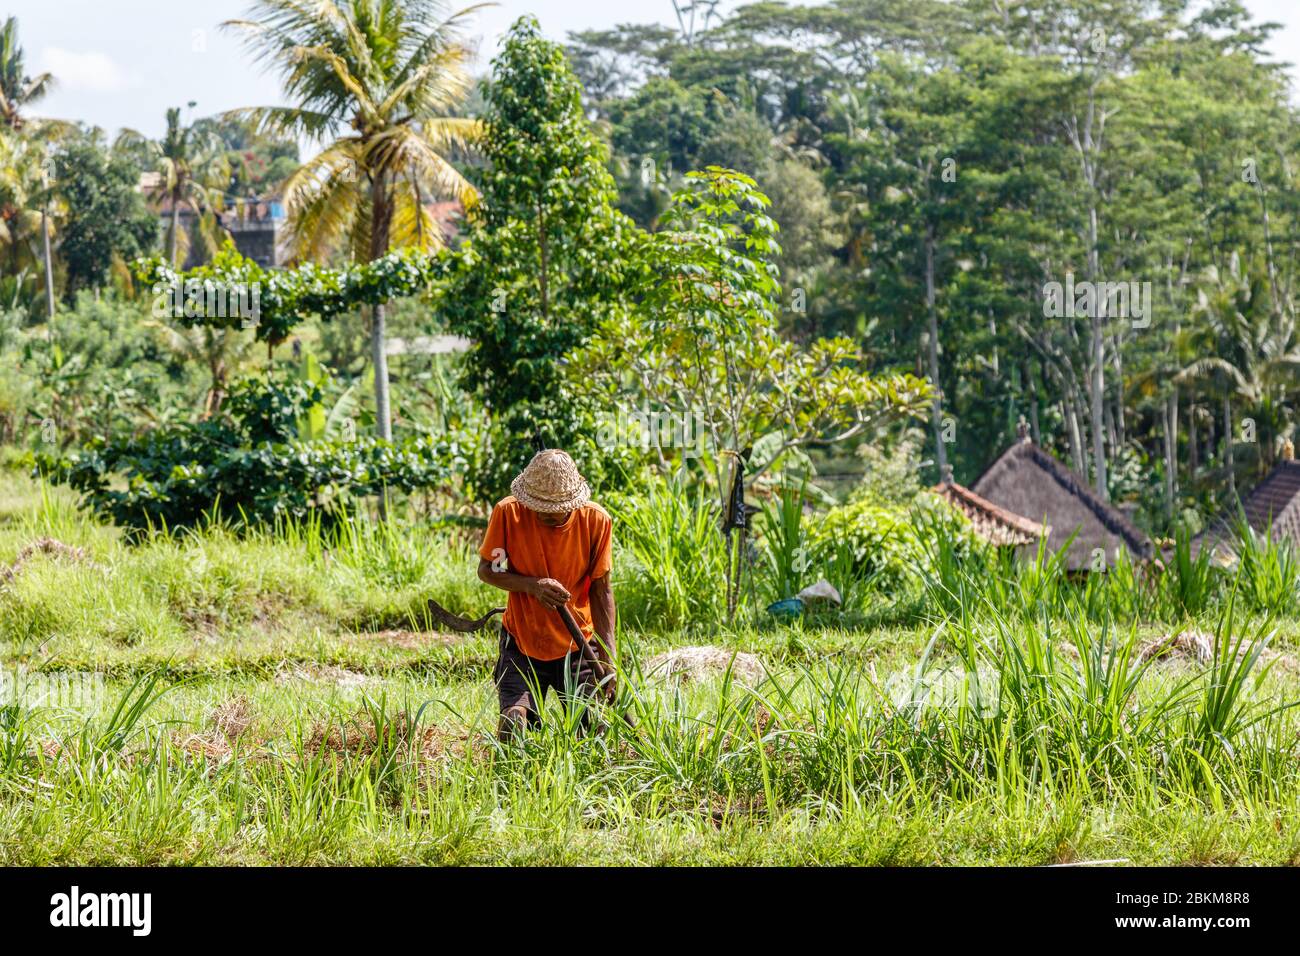 Balinesischer Bauer in traditionellem Strohhut, der Gras auf einem Feld schneidet. Ländliche Landschaft. Gianyar, Bali, Indonesien Stockfoto